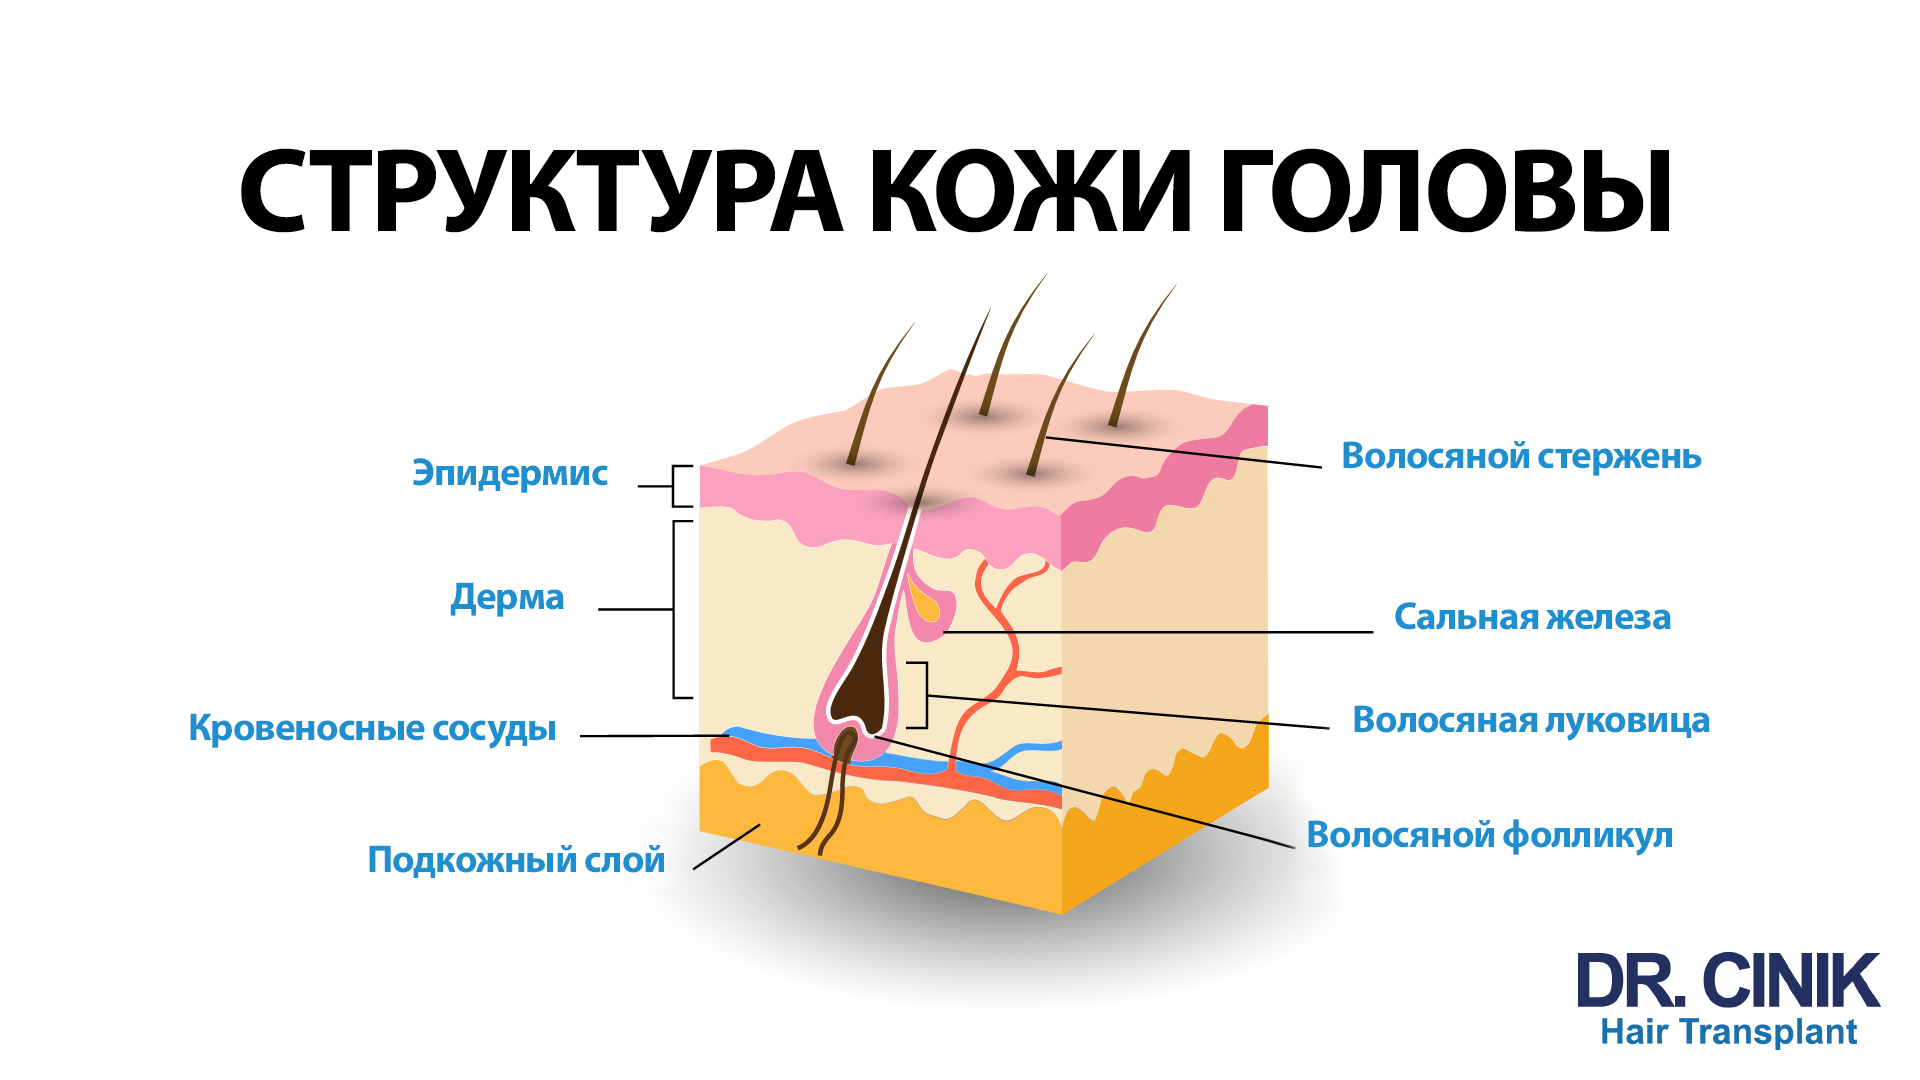 На изображении представлена детализированная диаграмма структуры кожи головы. На диаграмме изображен участок кожи в разрезе, где показаны различные слои: эпидермис, дерма, подкожный слой, а также кровеносные сосуды и волосяные фолликулы с луковицами. Каждый компонент подписан: волосяной стержень выходит из эпидермиса, сальная железа находится в дерме, а волосная луковица и фолликул находятся в нижних слоях. В верхней части изображения крупным шрифтом написано "СТРУКТУРА КОЖИ ГОЛОВЫ", а в нижней части - логотип "DR. CINIK Hair Transplant".